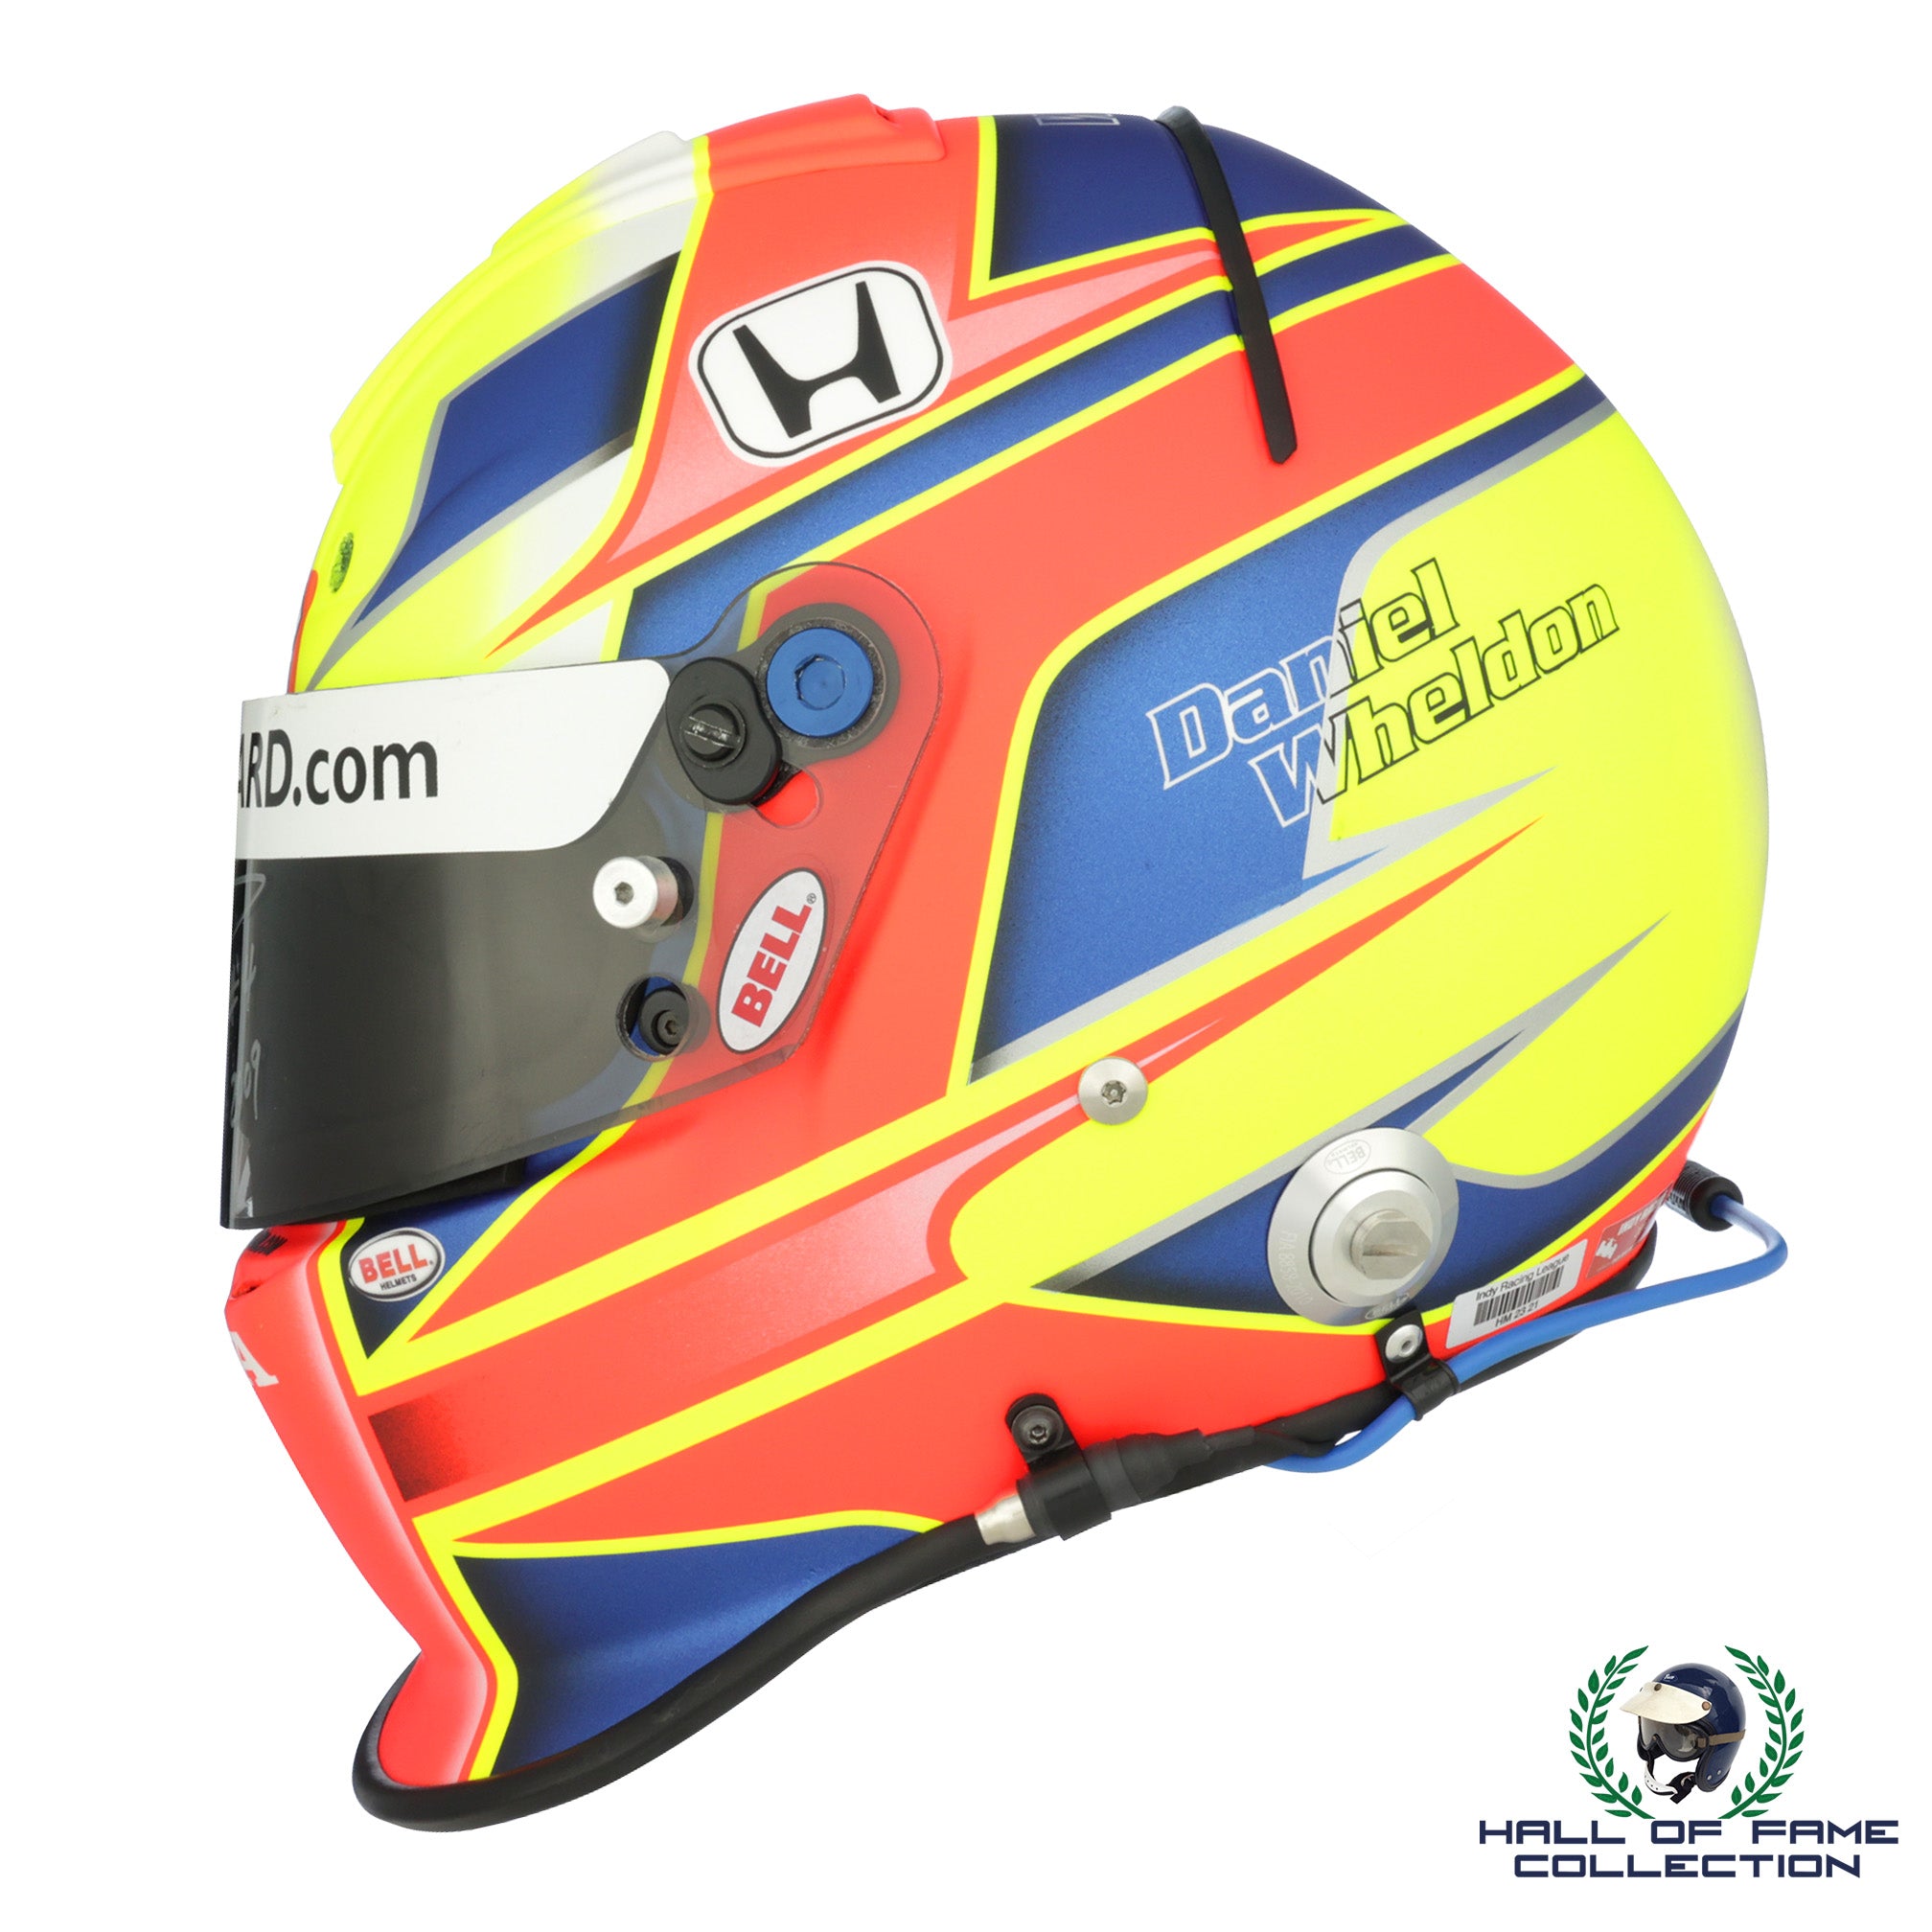 2009 Dan Wheldon Replica Bell Helmet With Signed Race Worn Visor